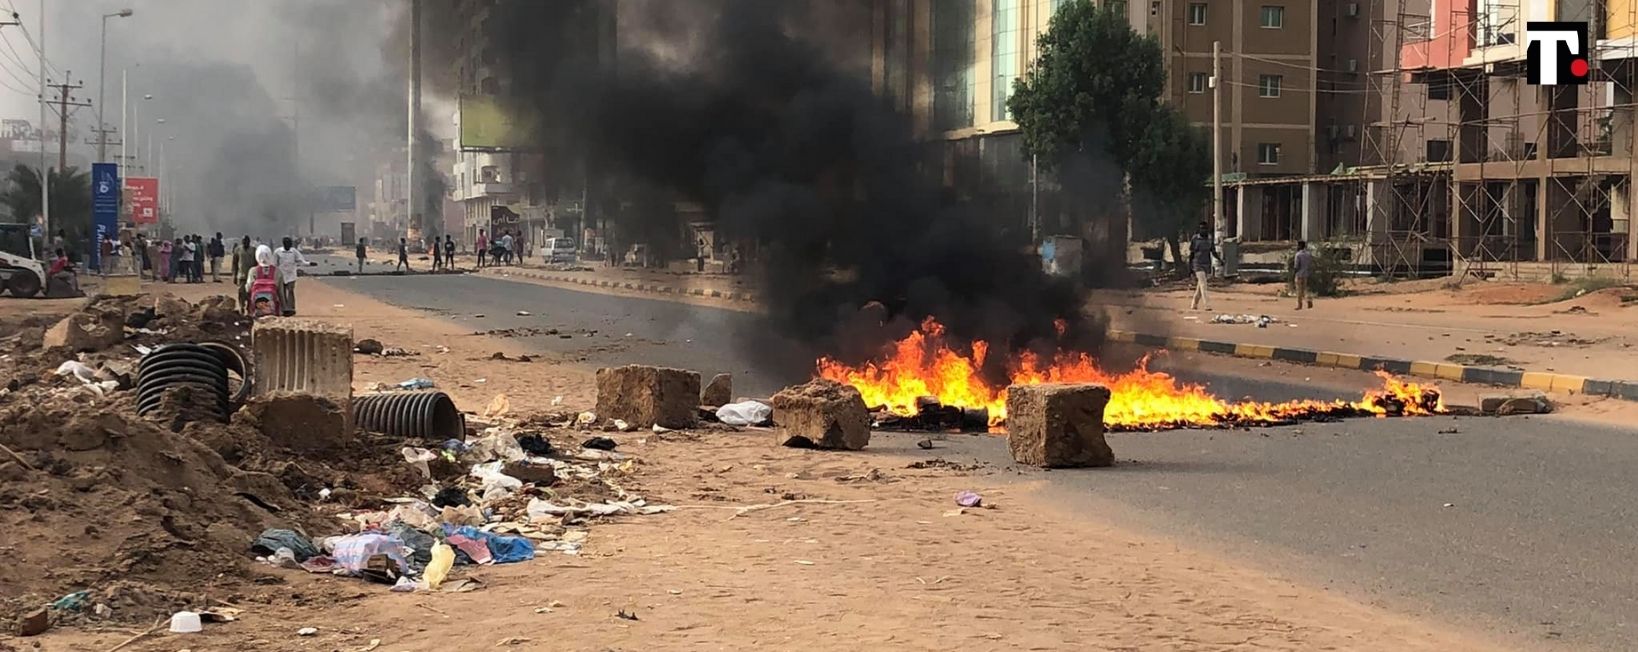 colpo di stato Sudan